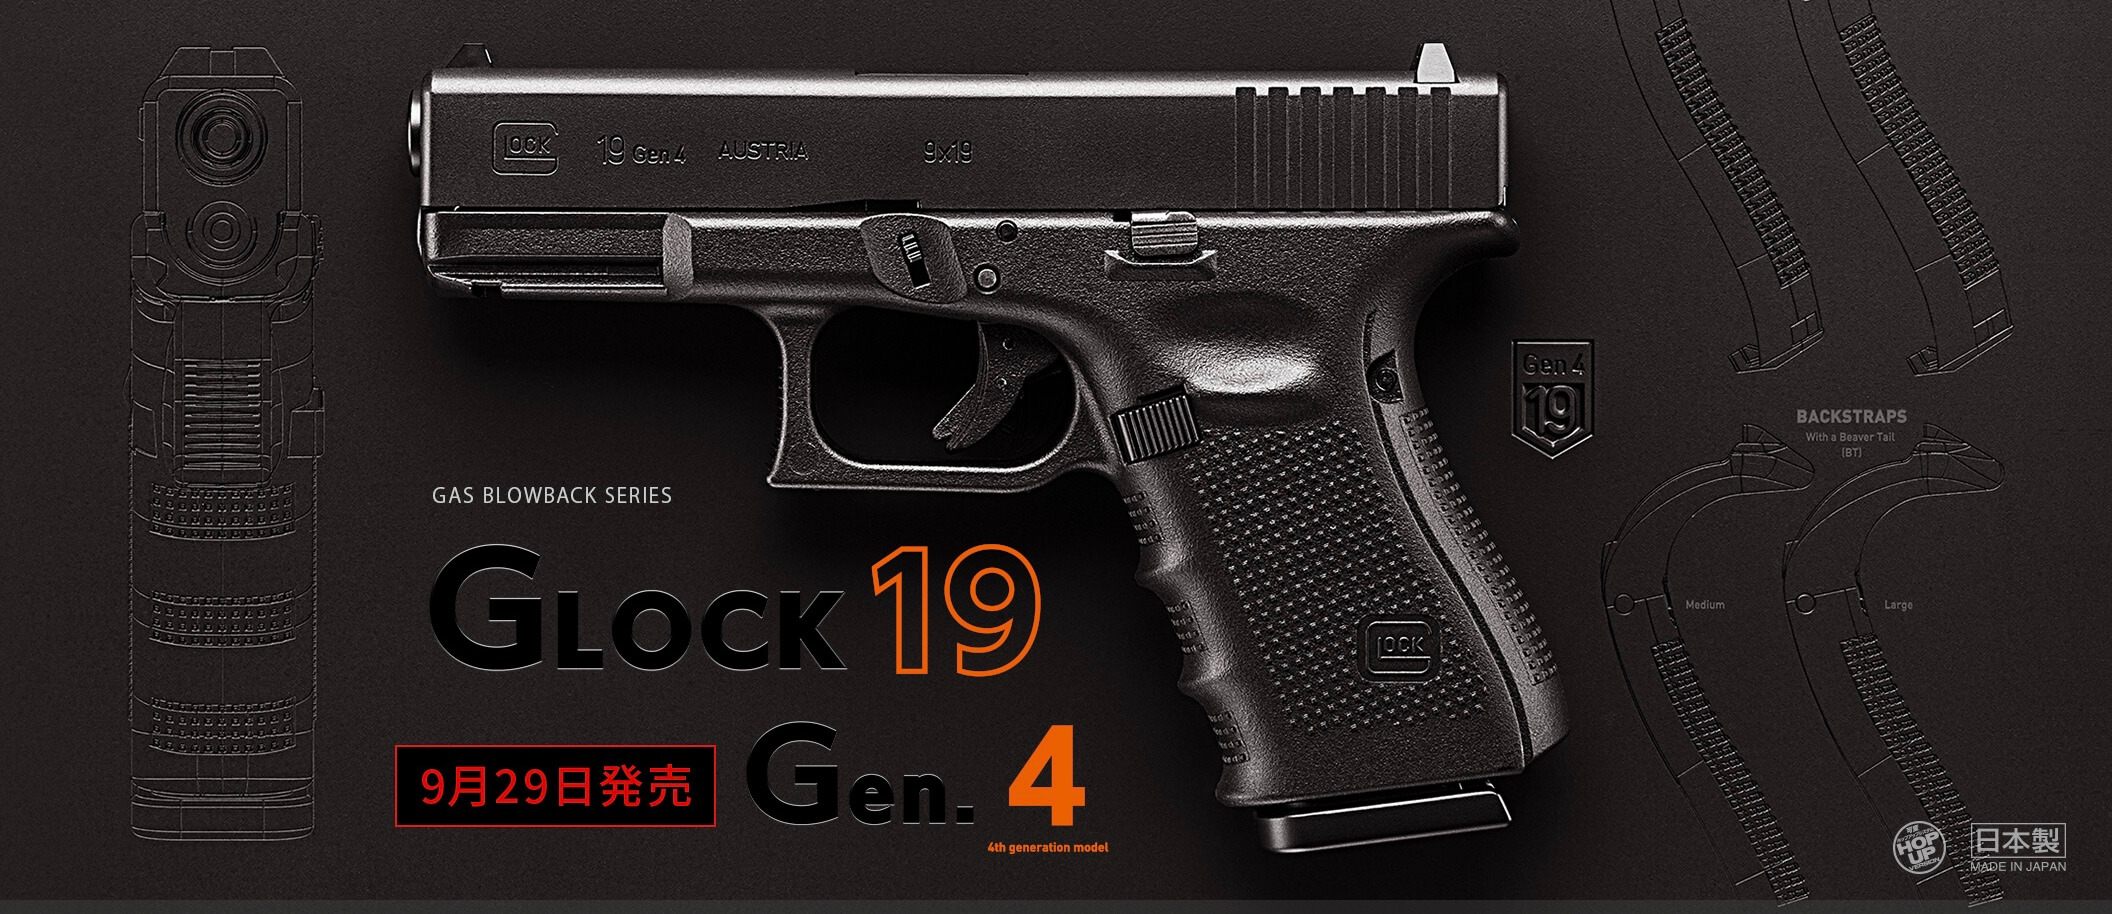 東京マルイ グロック 19 Gen.4 – 取り回しがよく使いやすい超絶人気の 